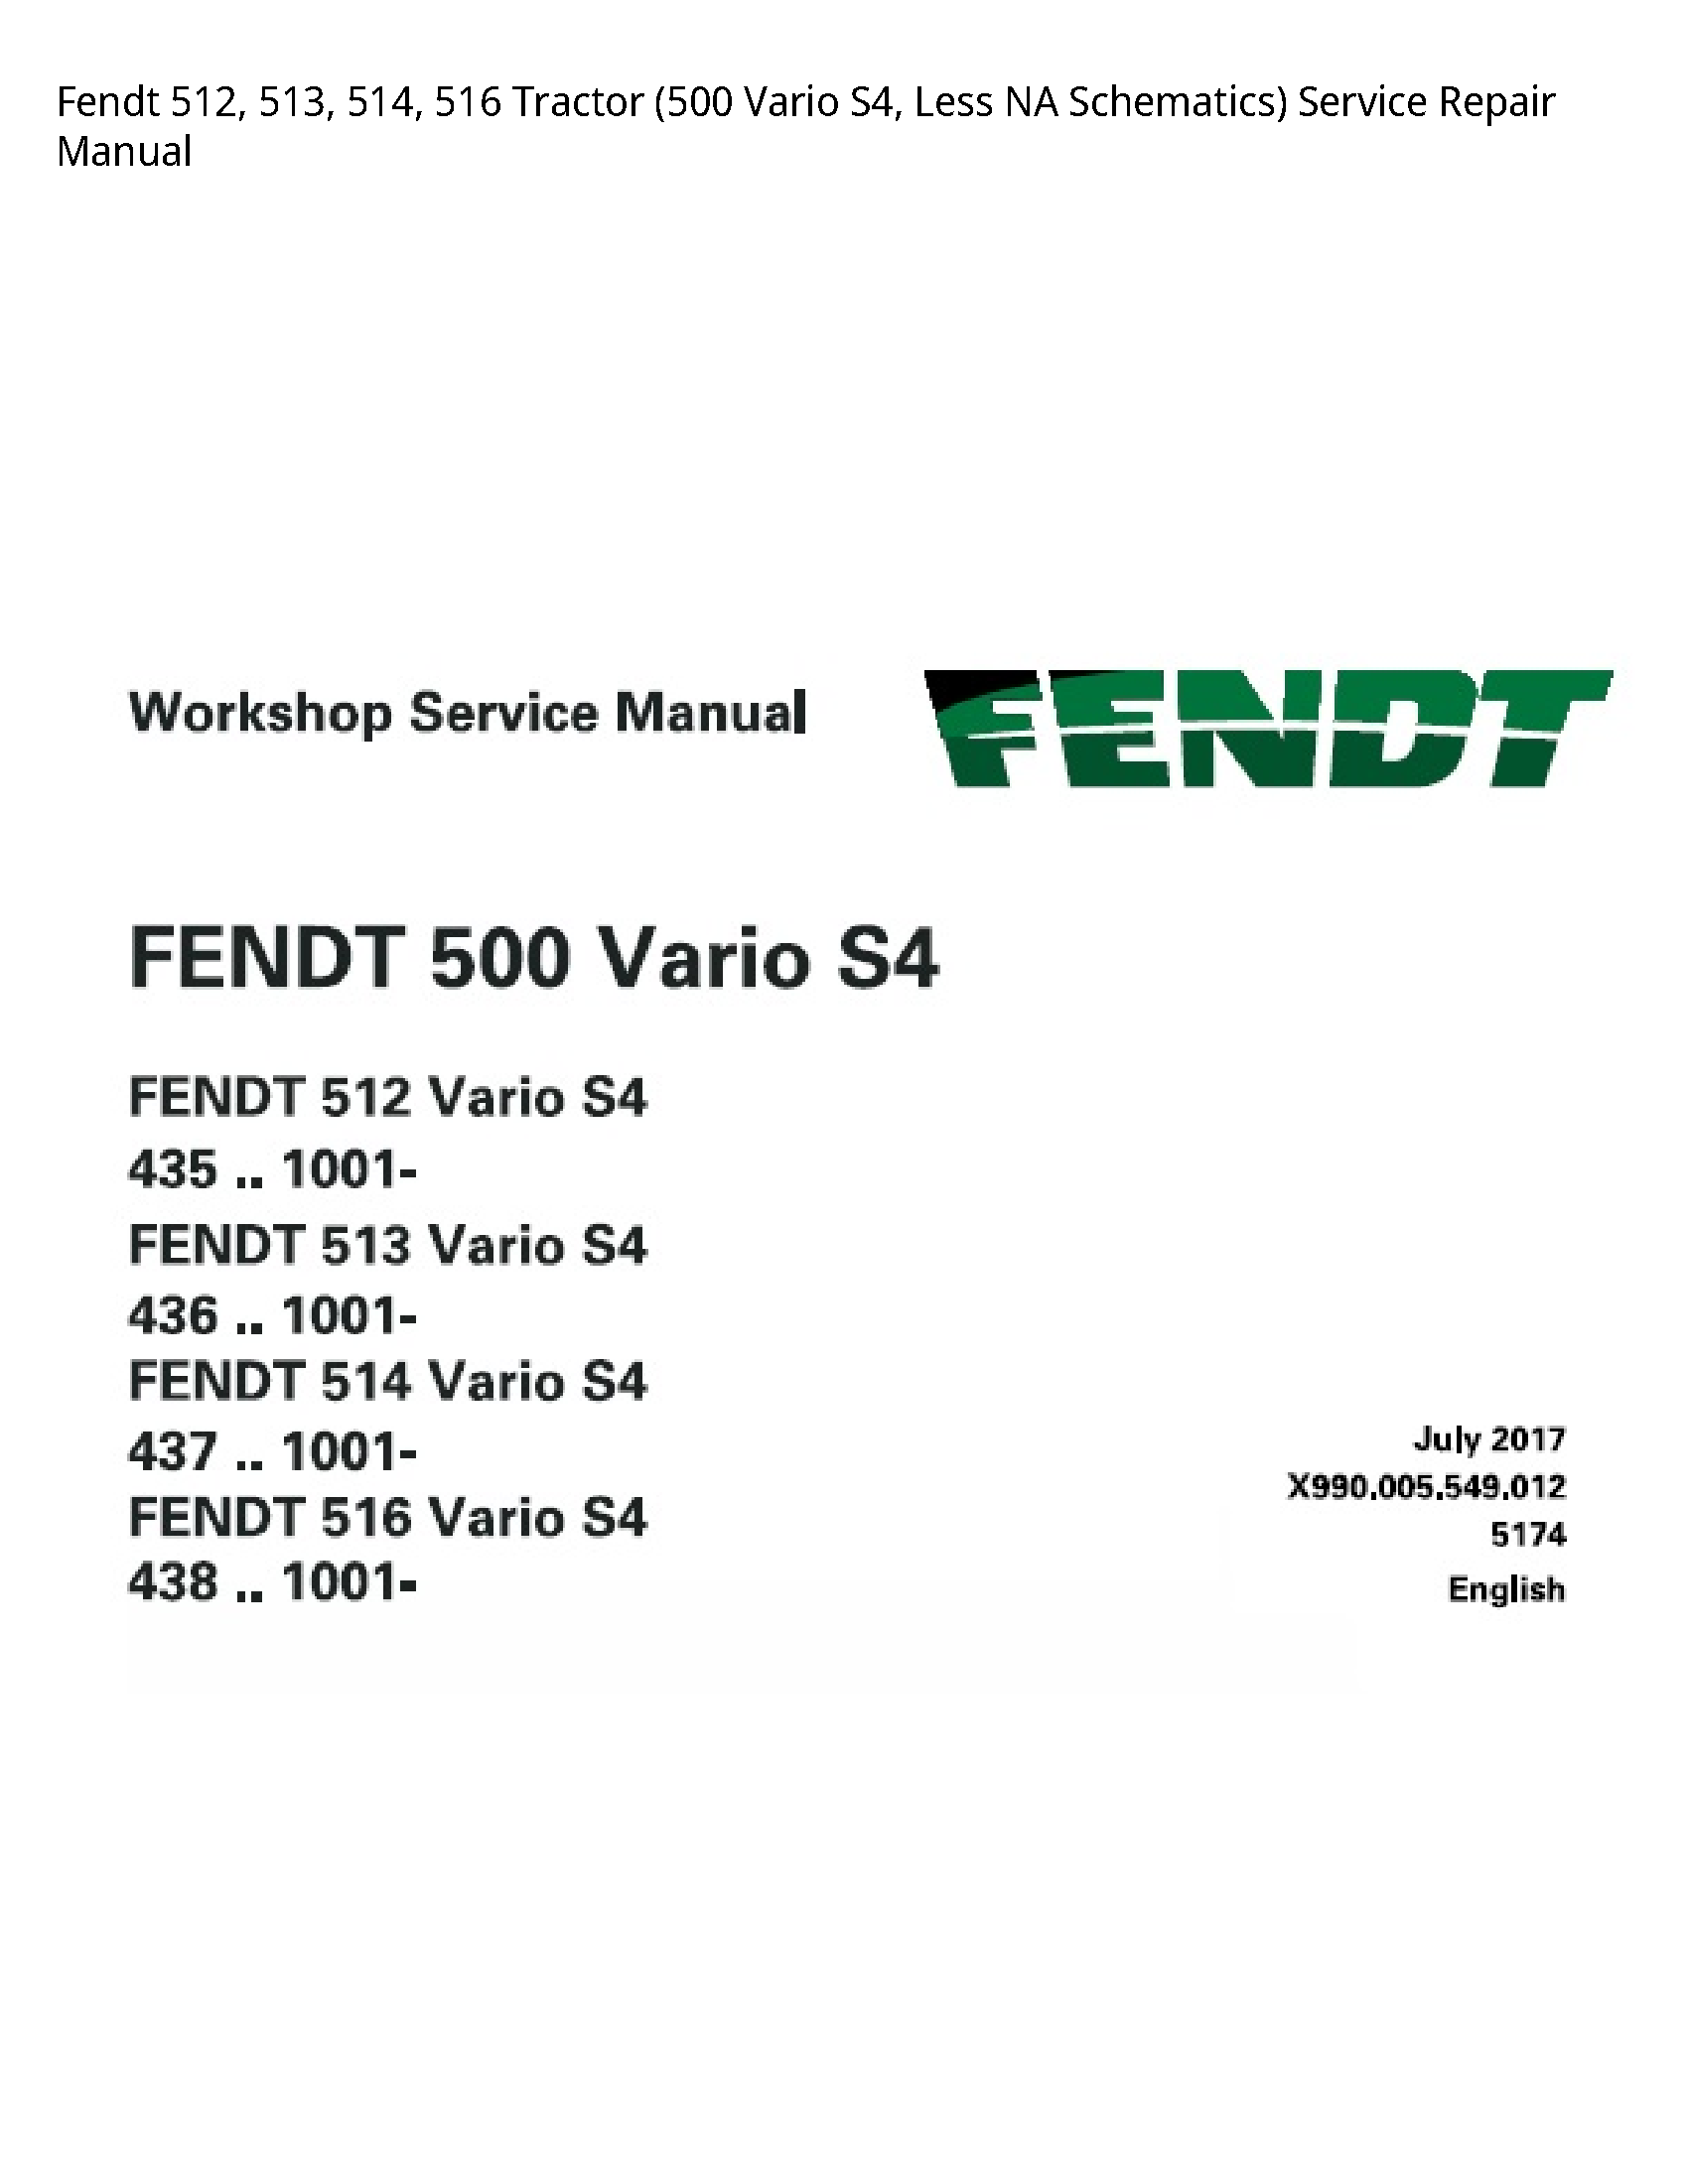 Fendt 512 Tractor Vario Less NA Schematics) manual